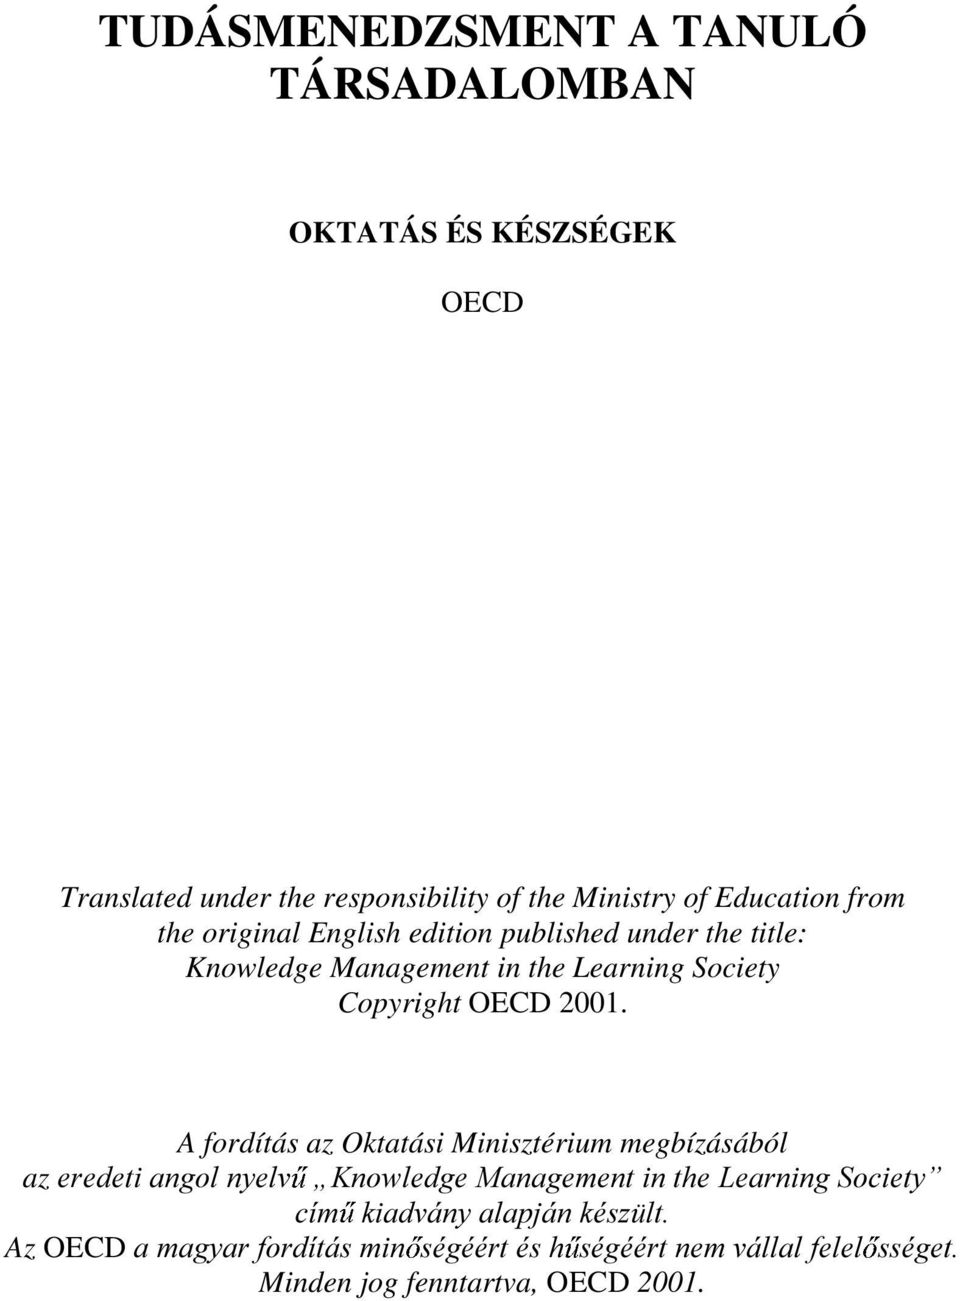 Copyright OECD 2001. A fordítás az Oktatási Minisztérium megbízásából az HUHGHWLDQJROQ\HOY Ä.